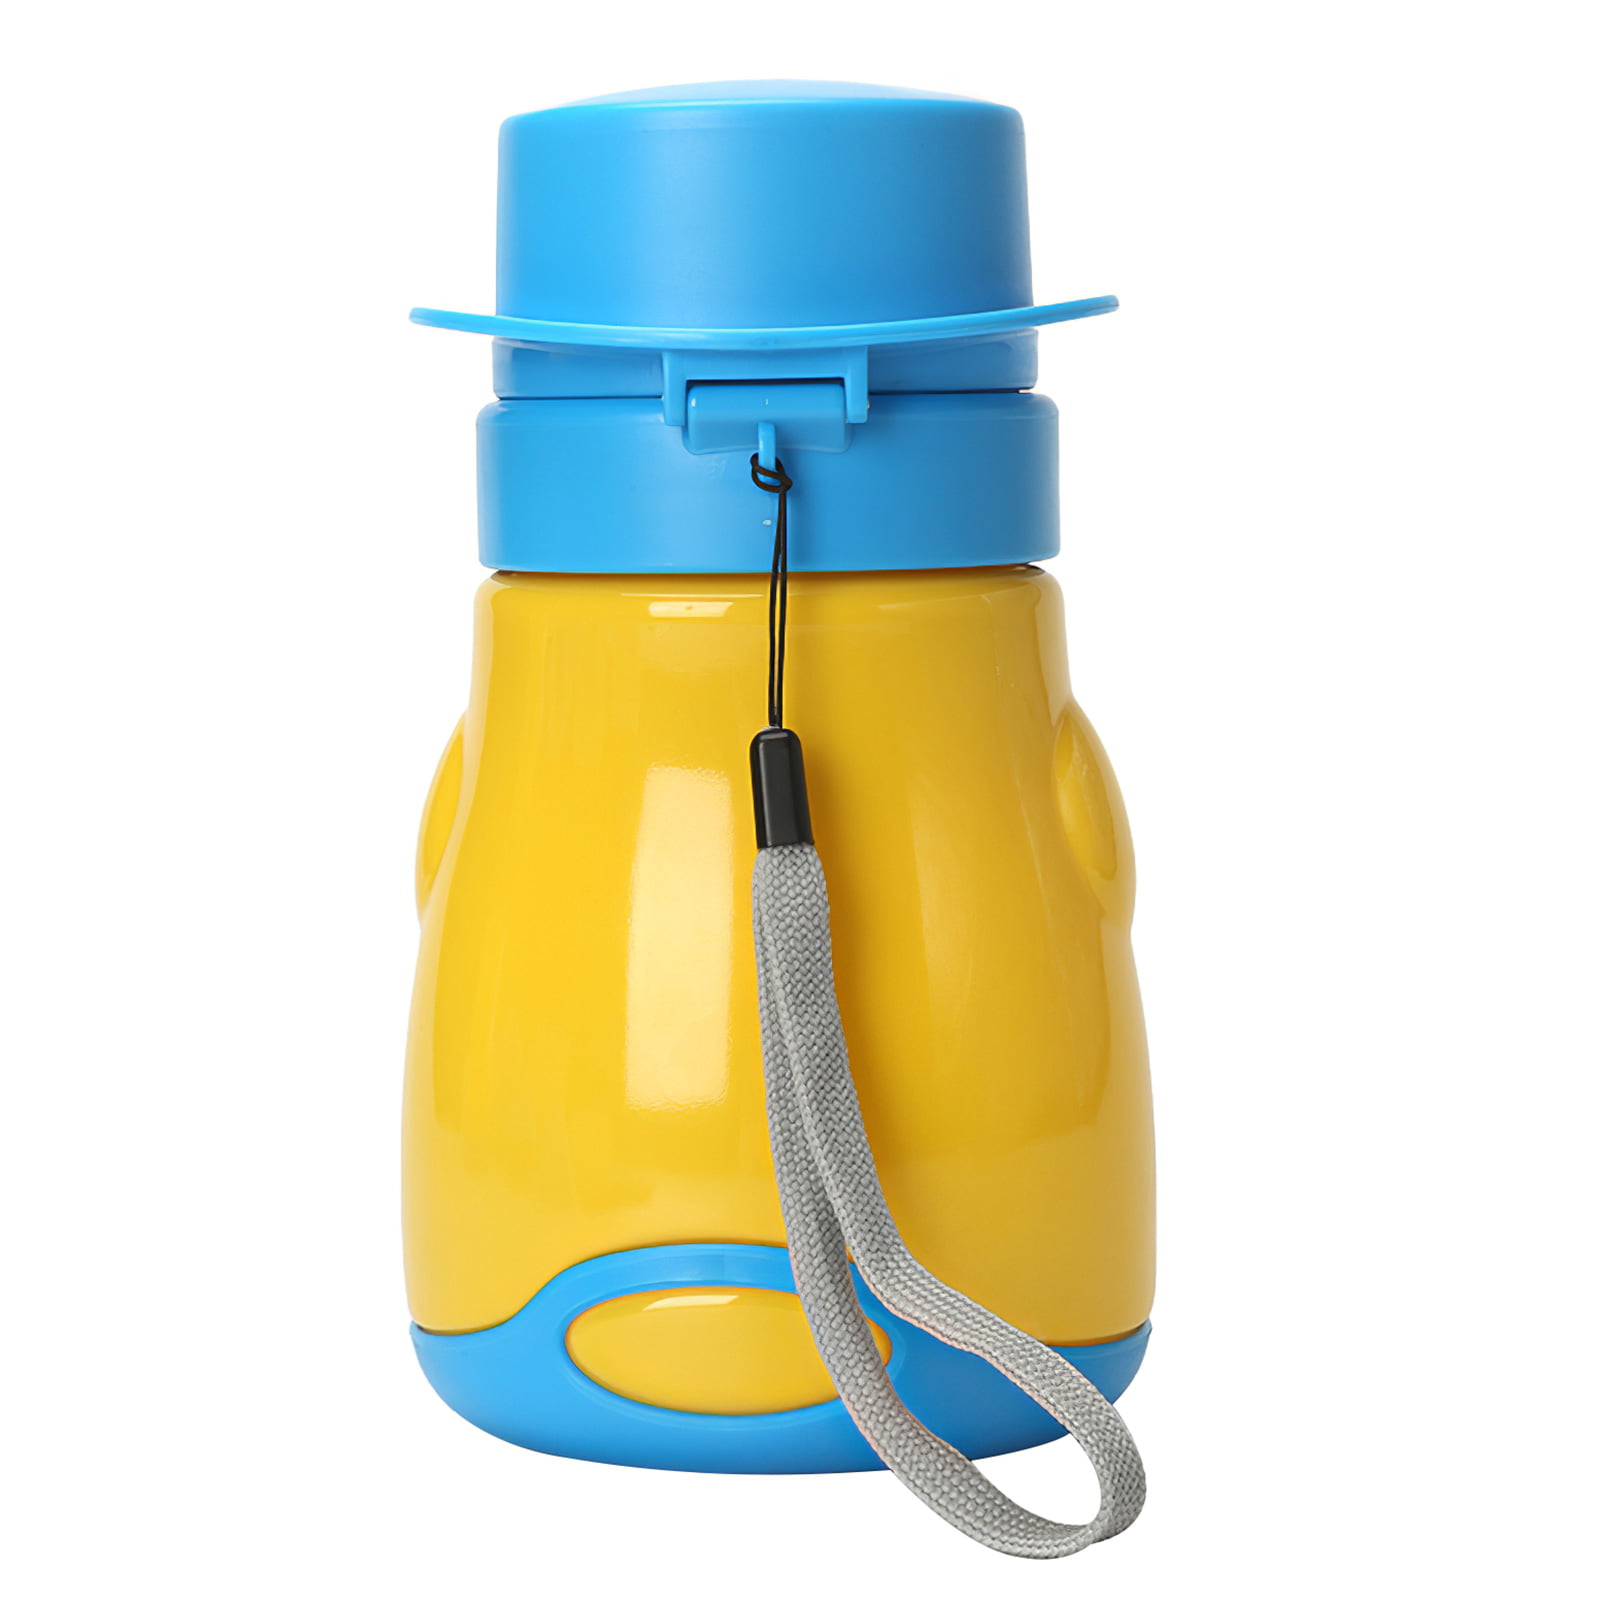 Urinal Potty Bottle Pee Bottle Portable Toilet Convenient Use Plastic Yellow 